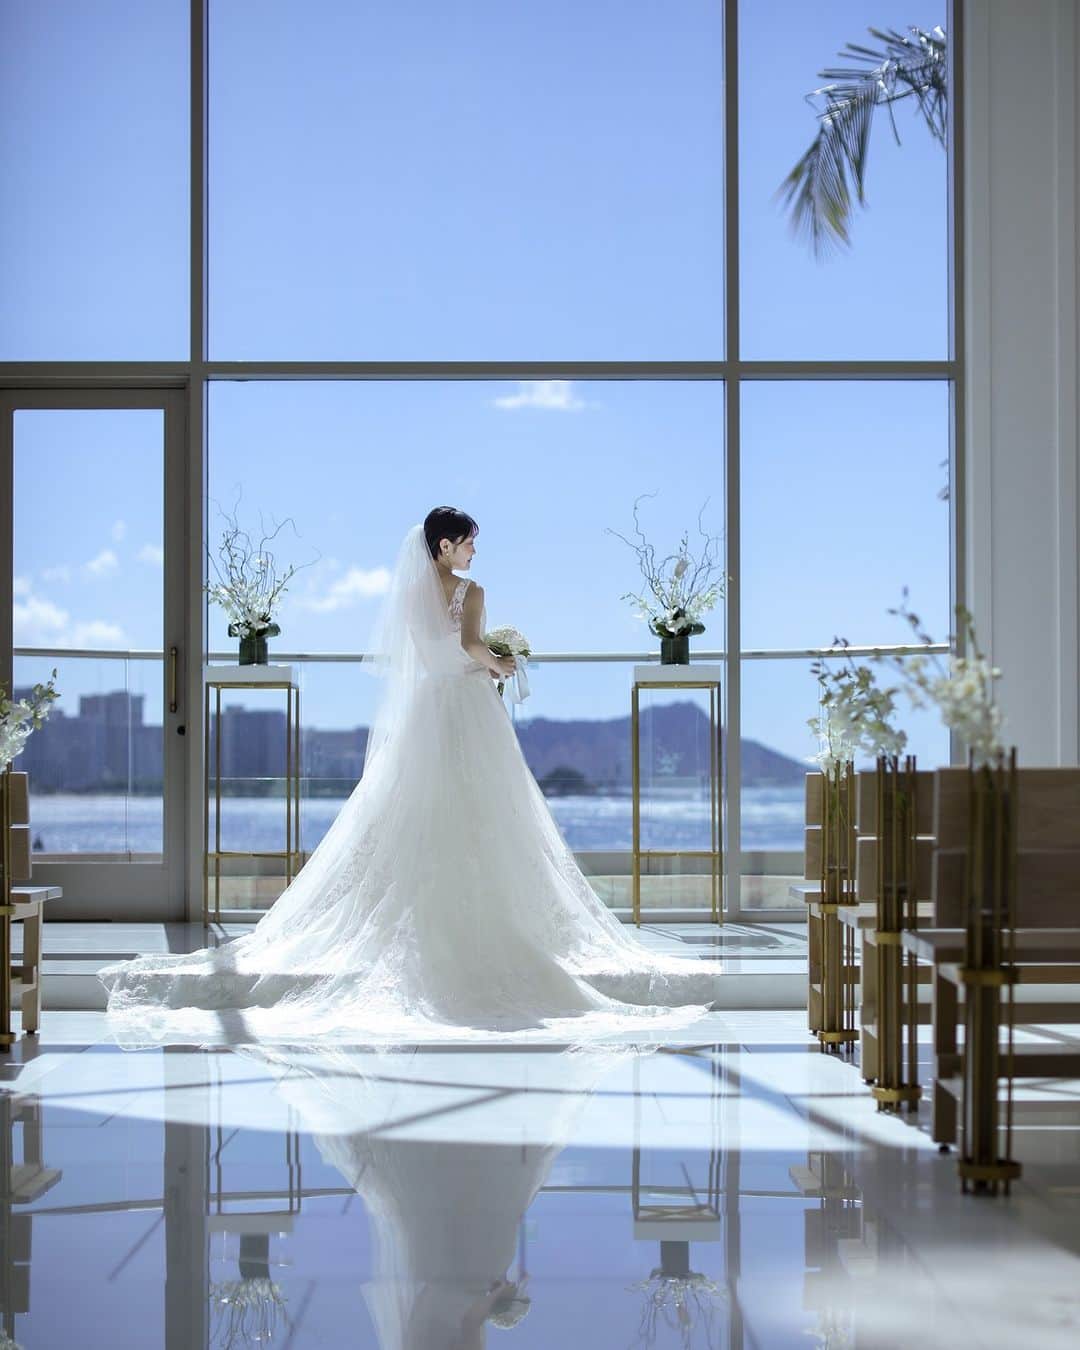 The Terrace By The Seaのインスタグラム：「@the_terrace_by_the_sea Hawaii Wedding情報はこちら𓂃𓈒𓏸  ---------  ワイキキより車で約10分のカカアコエリアに建つ ザ・テラス バイ・ザ・シー  波打つハワイの海を感じさせる ナチュラルウッドの壁  サンゴからできた“見守る”という特別な意味を持つ コーラルストーンの柱  ハワイの素材を使用した上質な空間は 花嫁姿がよく映える𓍯  -------------------  = produce = モチーフ @motif_resort  = photo = Etsuro @etsuro808_photography  --------------------  ハワイのザ・テラス バイ・ザ・シーにて 挙式を検討されていらっしゃる方におすすめ✯  2023年9月にオープン11周年を迎えることを記念して、 お得なアニバーサリープランのご案内を開始！  《組数限定 11th Anniversary Plan 最大 28.9万円 OFF！ 》  おふたりのご希望に合わせて選択可能な２つのプランを ご用意。  挙式に必要な基本挙式、ドレス＆タキシード、新婦様ヘ アメイク、アルバムが含まれるシンプルプランA（30組限 定）。  プランB（20組限定）はさらにロケーション撮影や アルバムアップグレードなどが含まれた充実プラン。  プロフィール欄のURLより、ウエディングの相談ご予約 が可能です。 小さい疑問や質問にもお答えいたしますので、お気軽に お問い合わせくださいませ🌺  ザ・テラス バイ・ザ・シーでは、健康と安全を最優先に 配慮し、安心してハワイでの時間を楽しんでいただいて おります𓆉  #テラスバイザシー #TheTerraceByTheSea #TAKAMIBRIDAL #タカミブライダル #MotifRESORT #テラス花嫁 #モチーフ花嫁 #リゾートウェディング #リゾート婚 #ハワイウェディング #ナウパカチャペル #ダイヤモンドヘッド #ステンドグラス  #カカアコ」